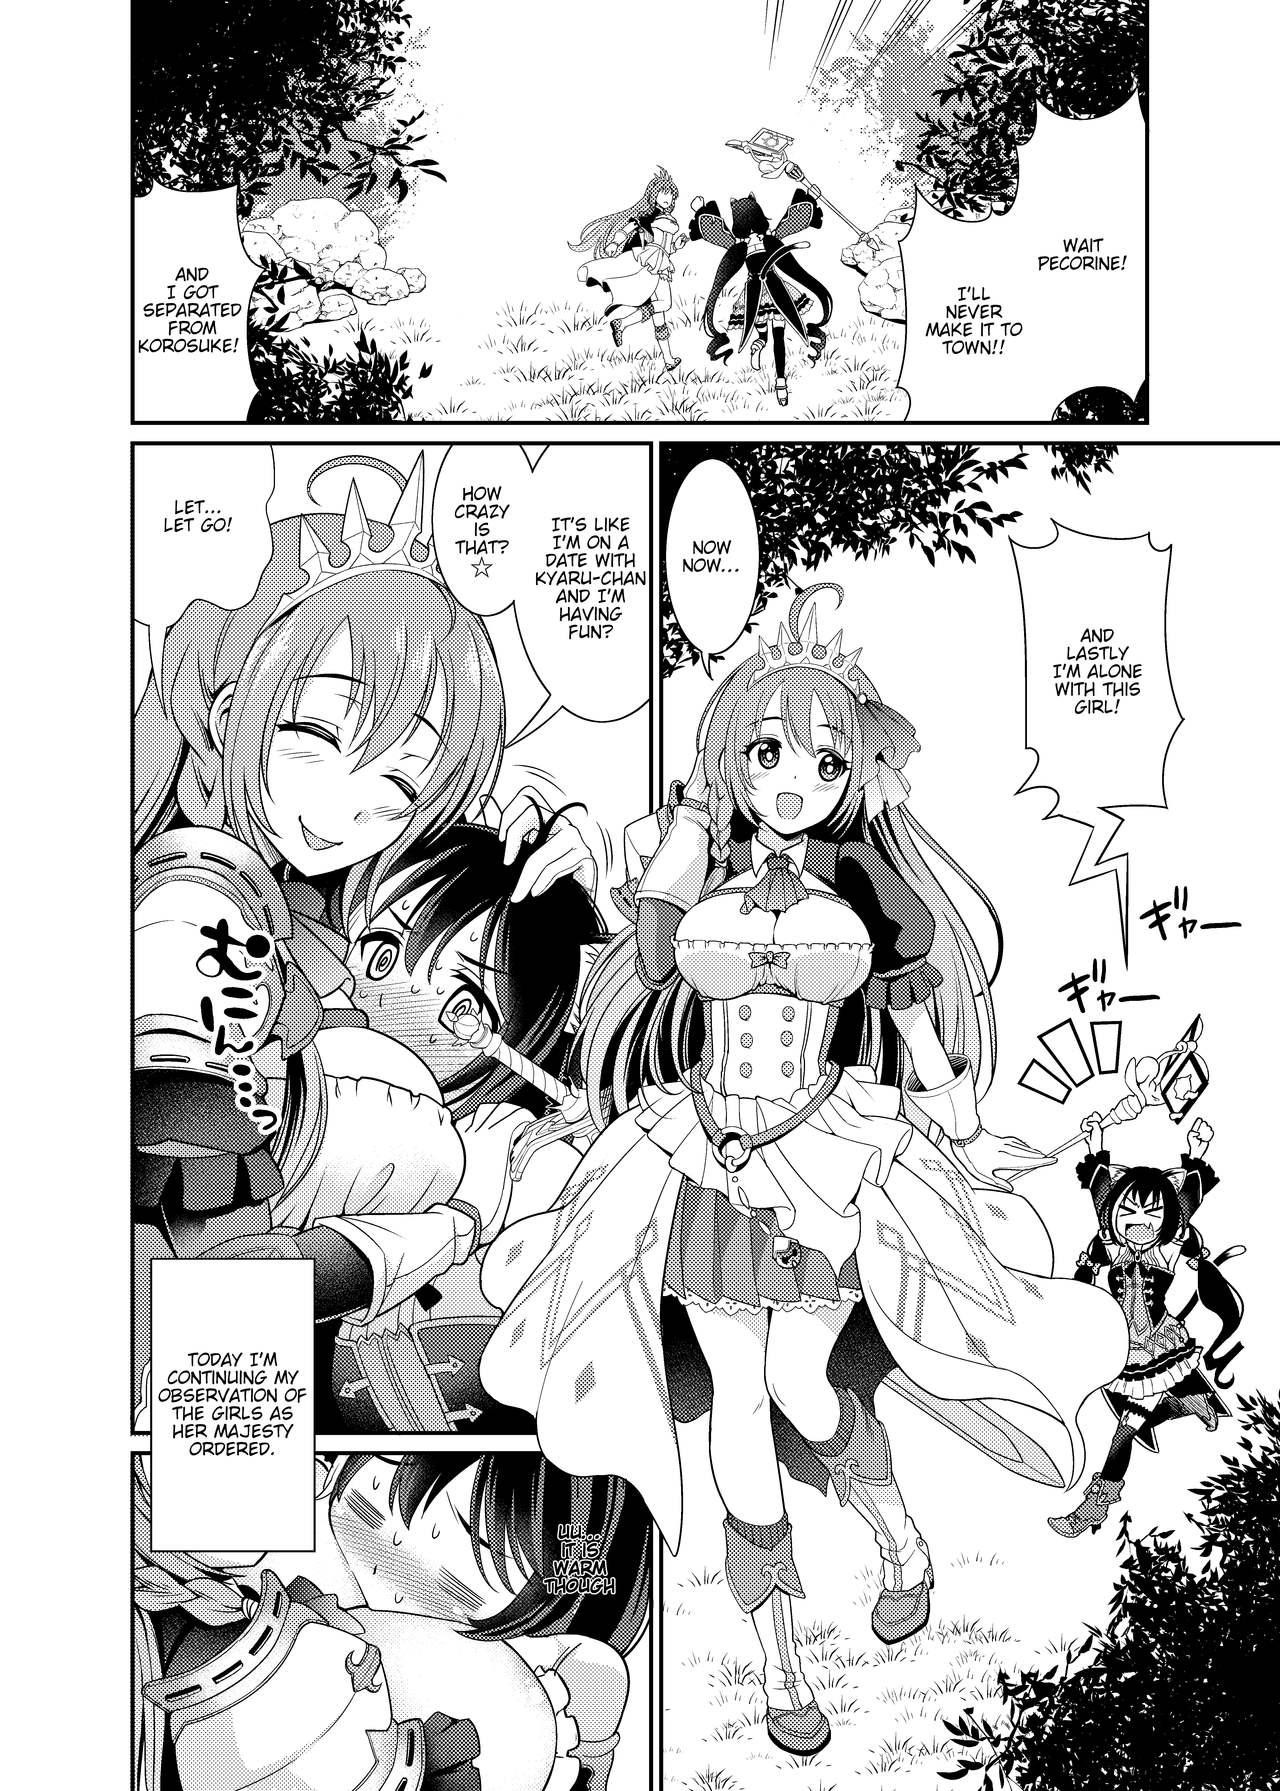 Anal Mamono nante Taberu kara... Ochinchin ga Haechau no yo!! - Princess connect Desperate - Page 4